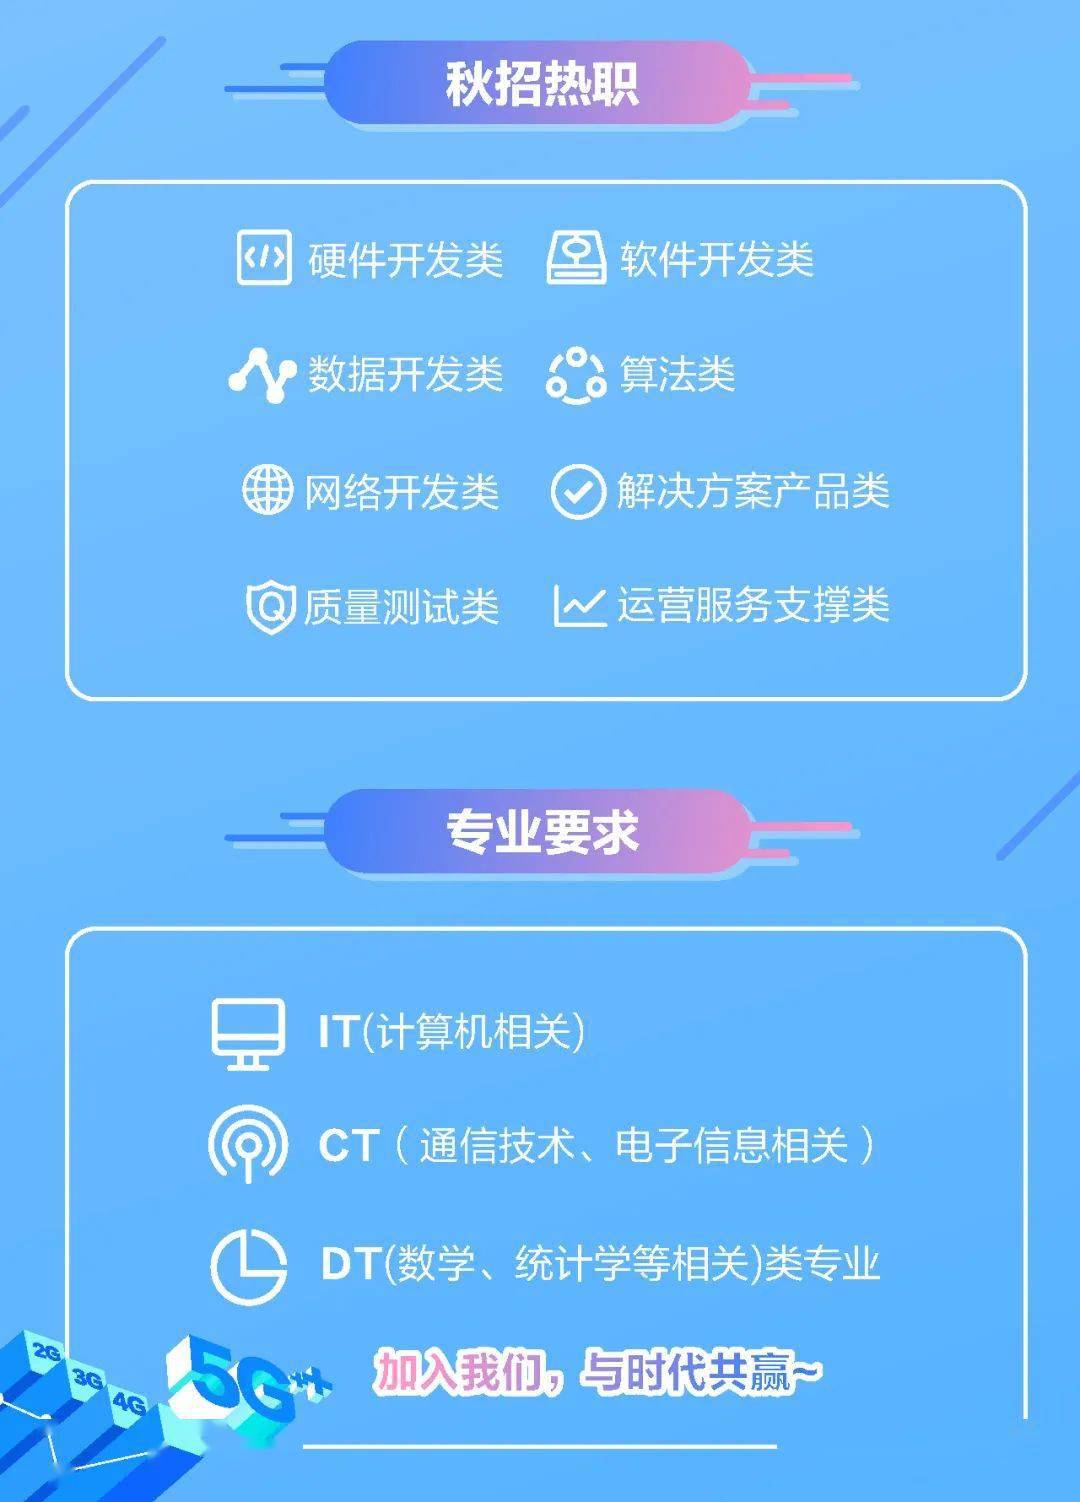 中国移动上海产业研究院2021校园招聘!